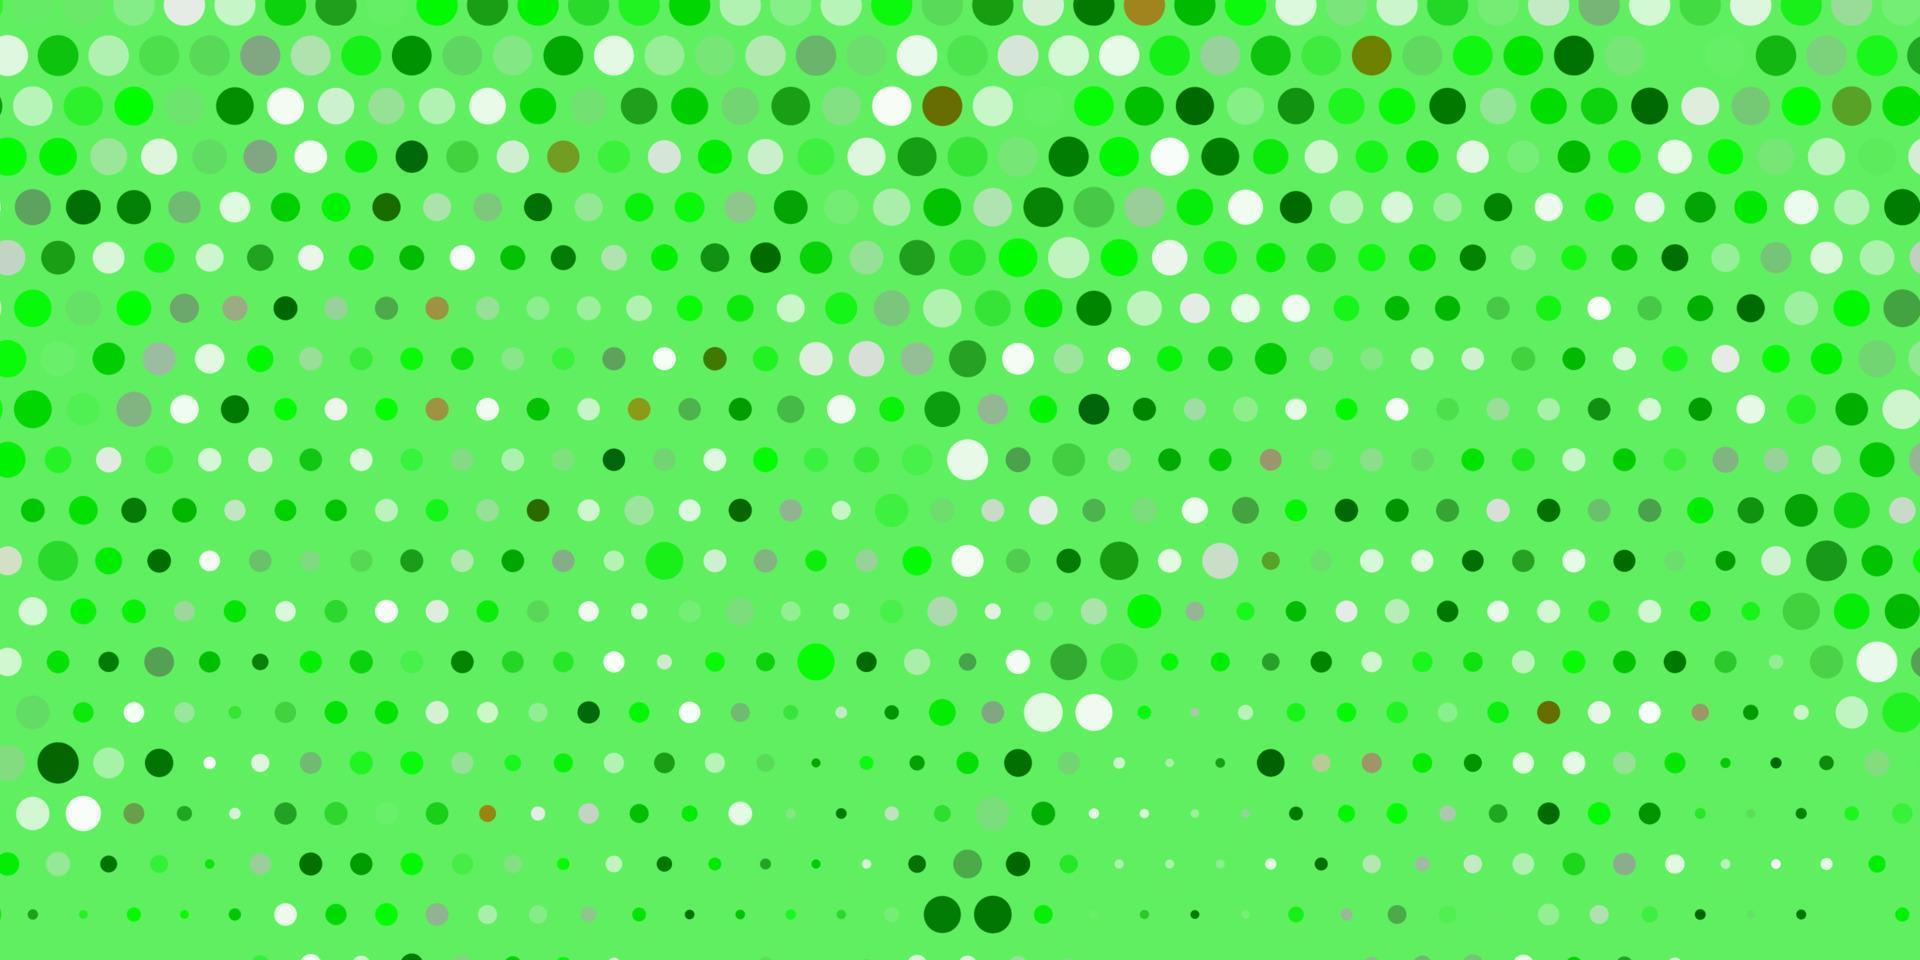 modelo de vetor verde e amarelo claro com círculos.